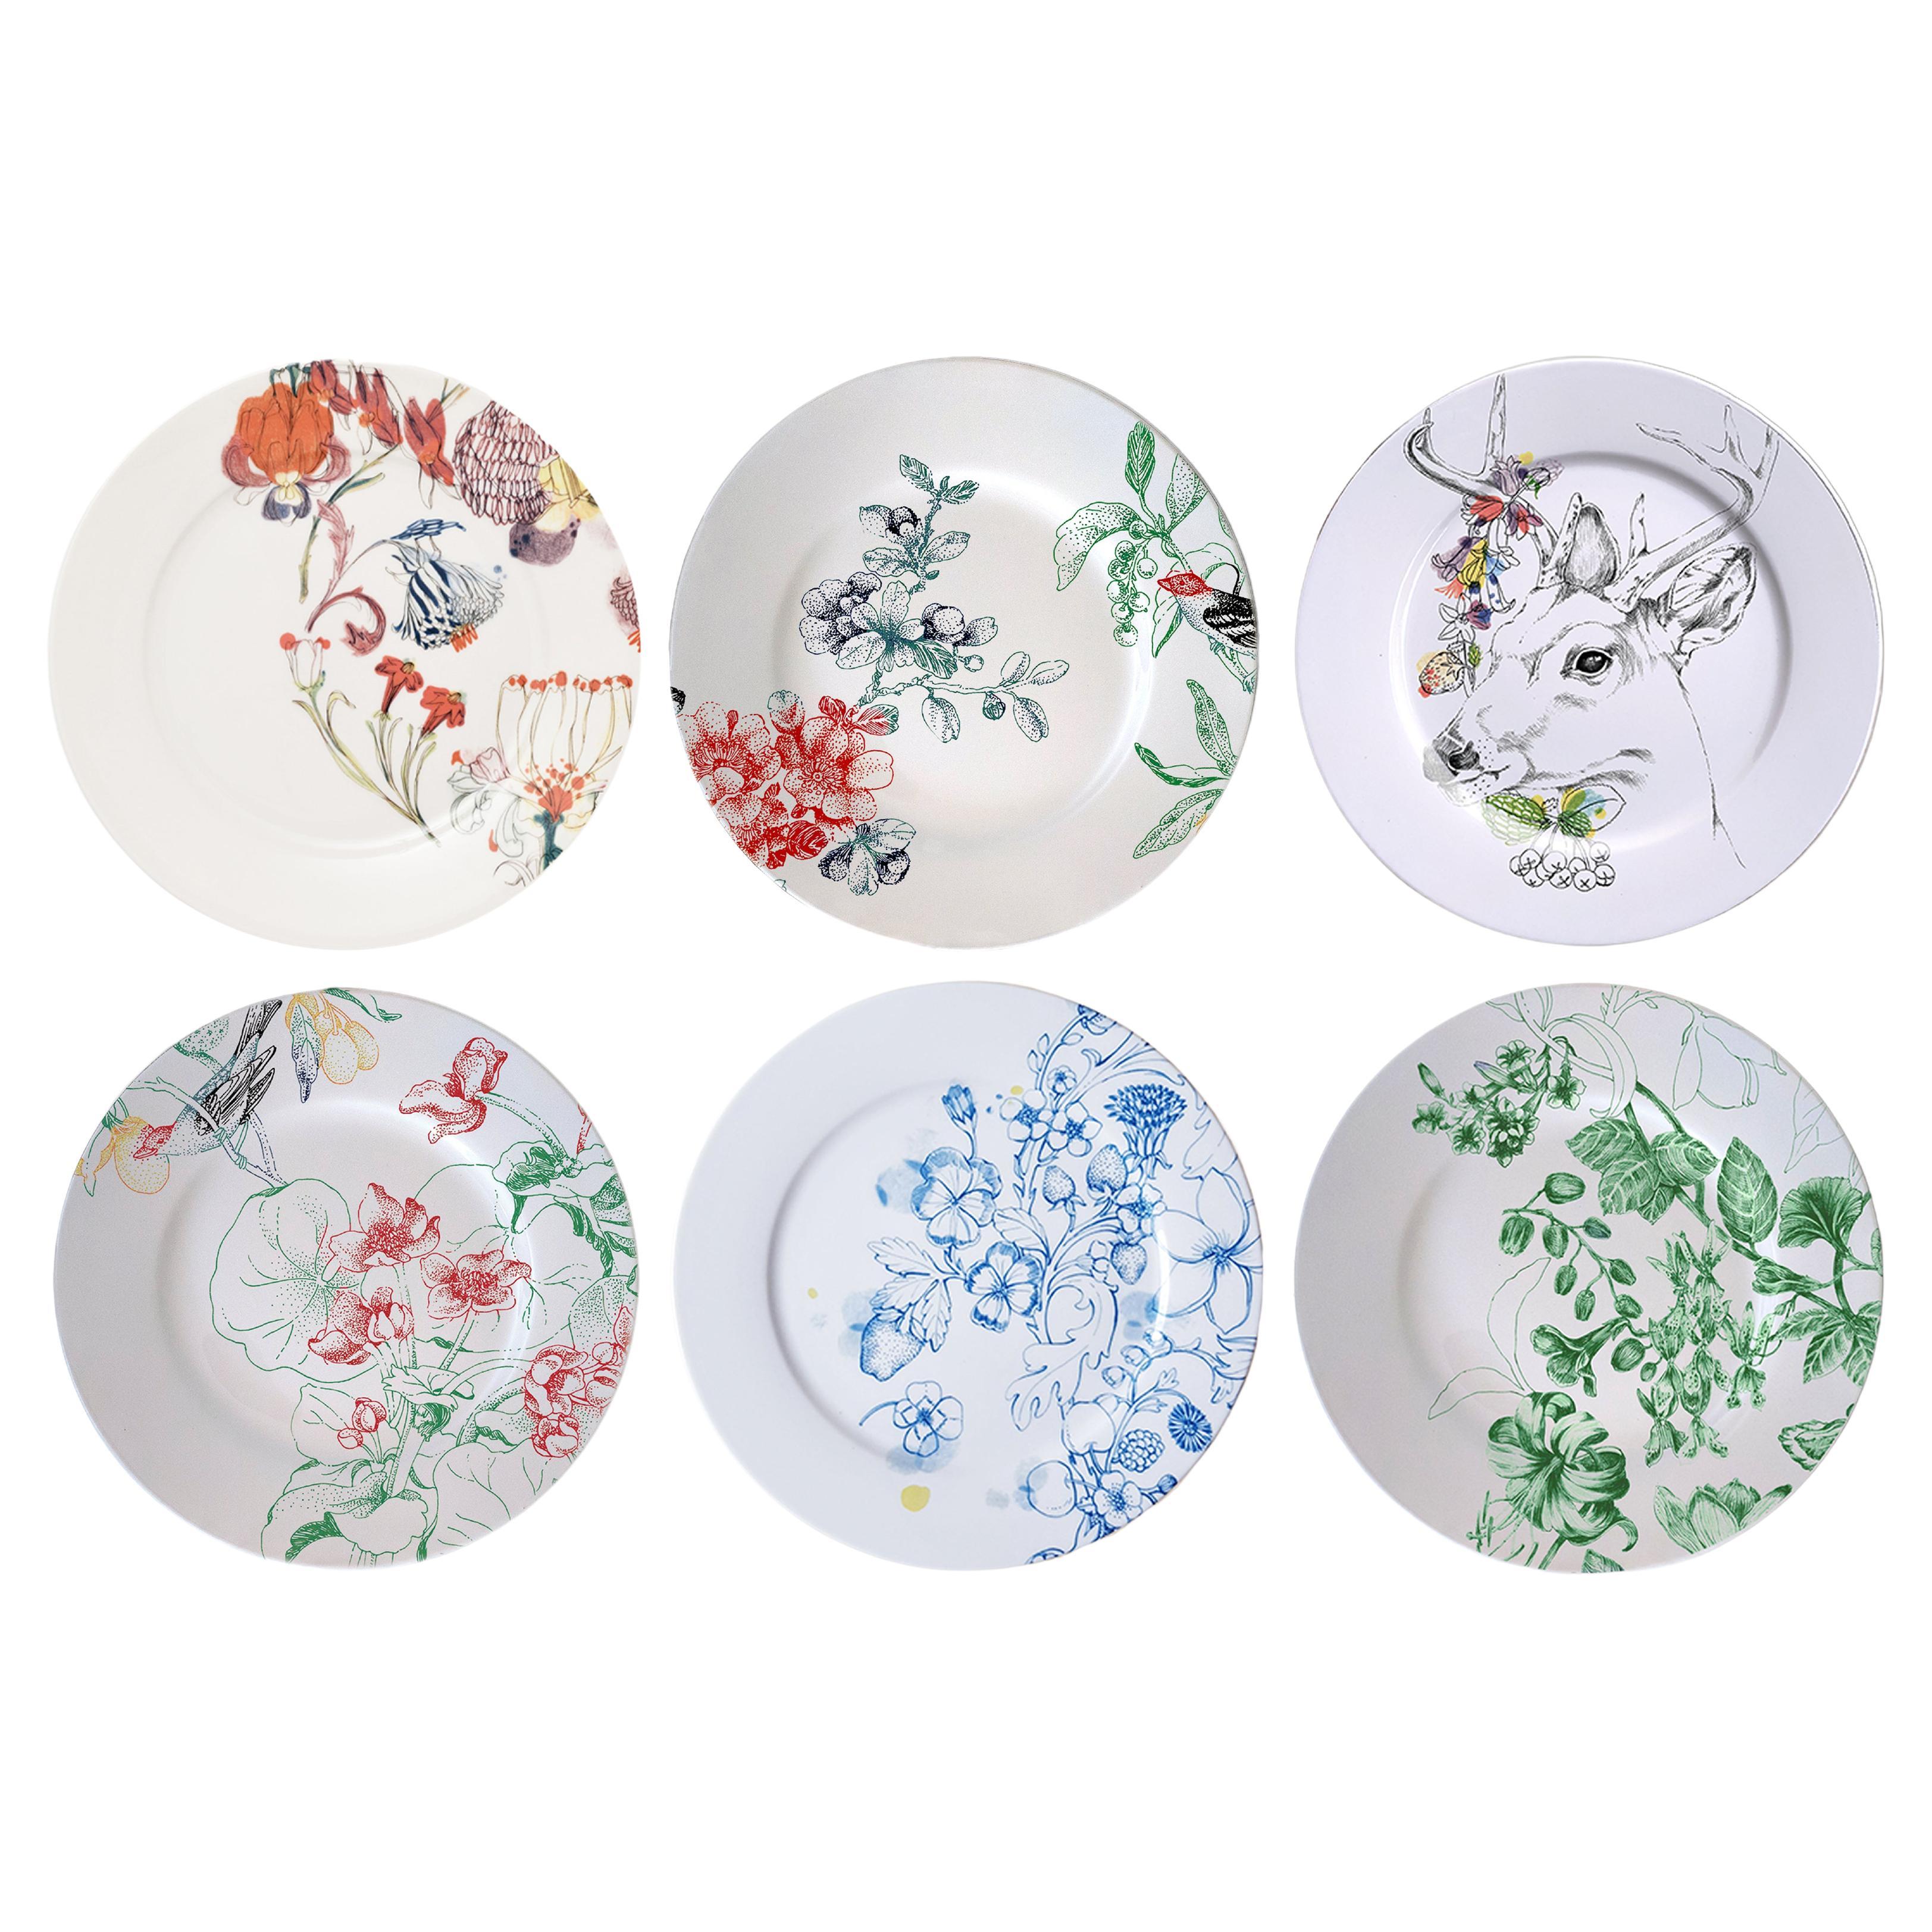 Six assiettes plates en porcelaine contemporaine « Mix & Match » avec fleurs et animaux